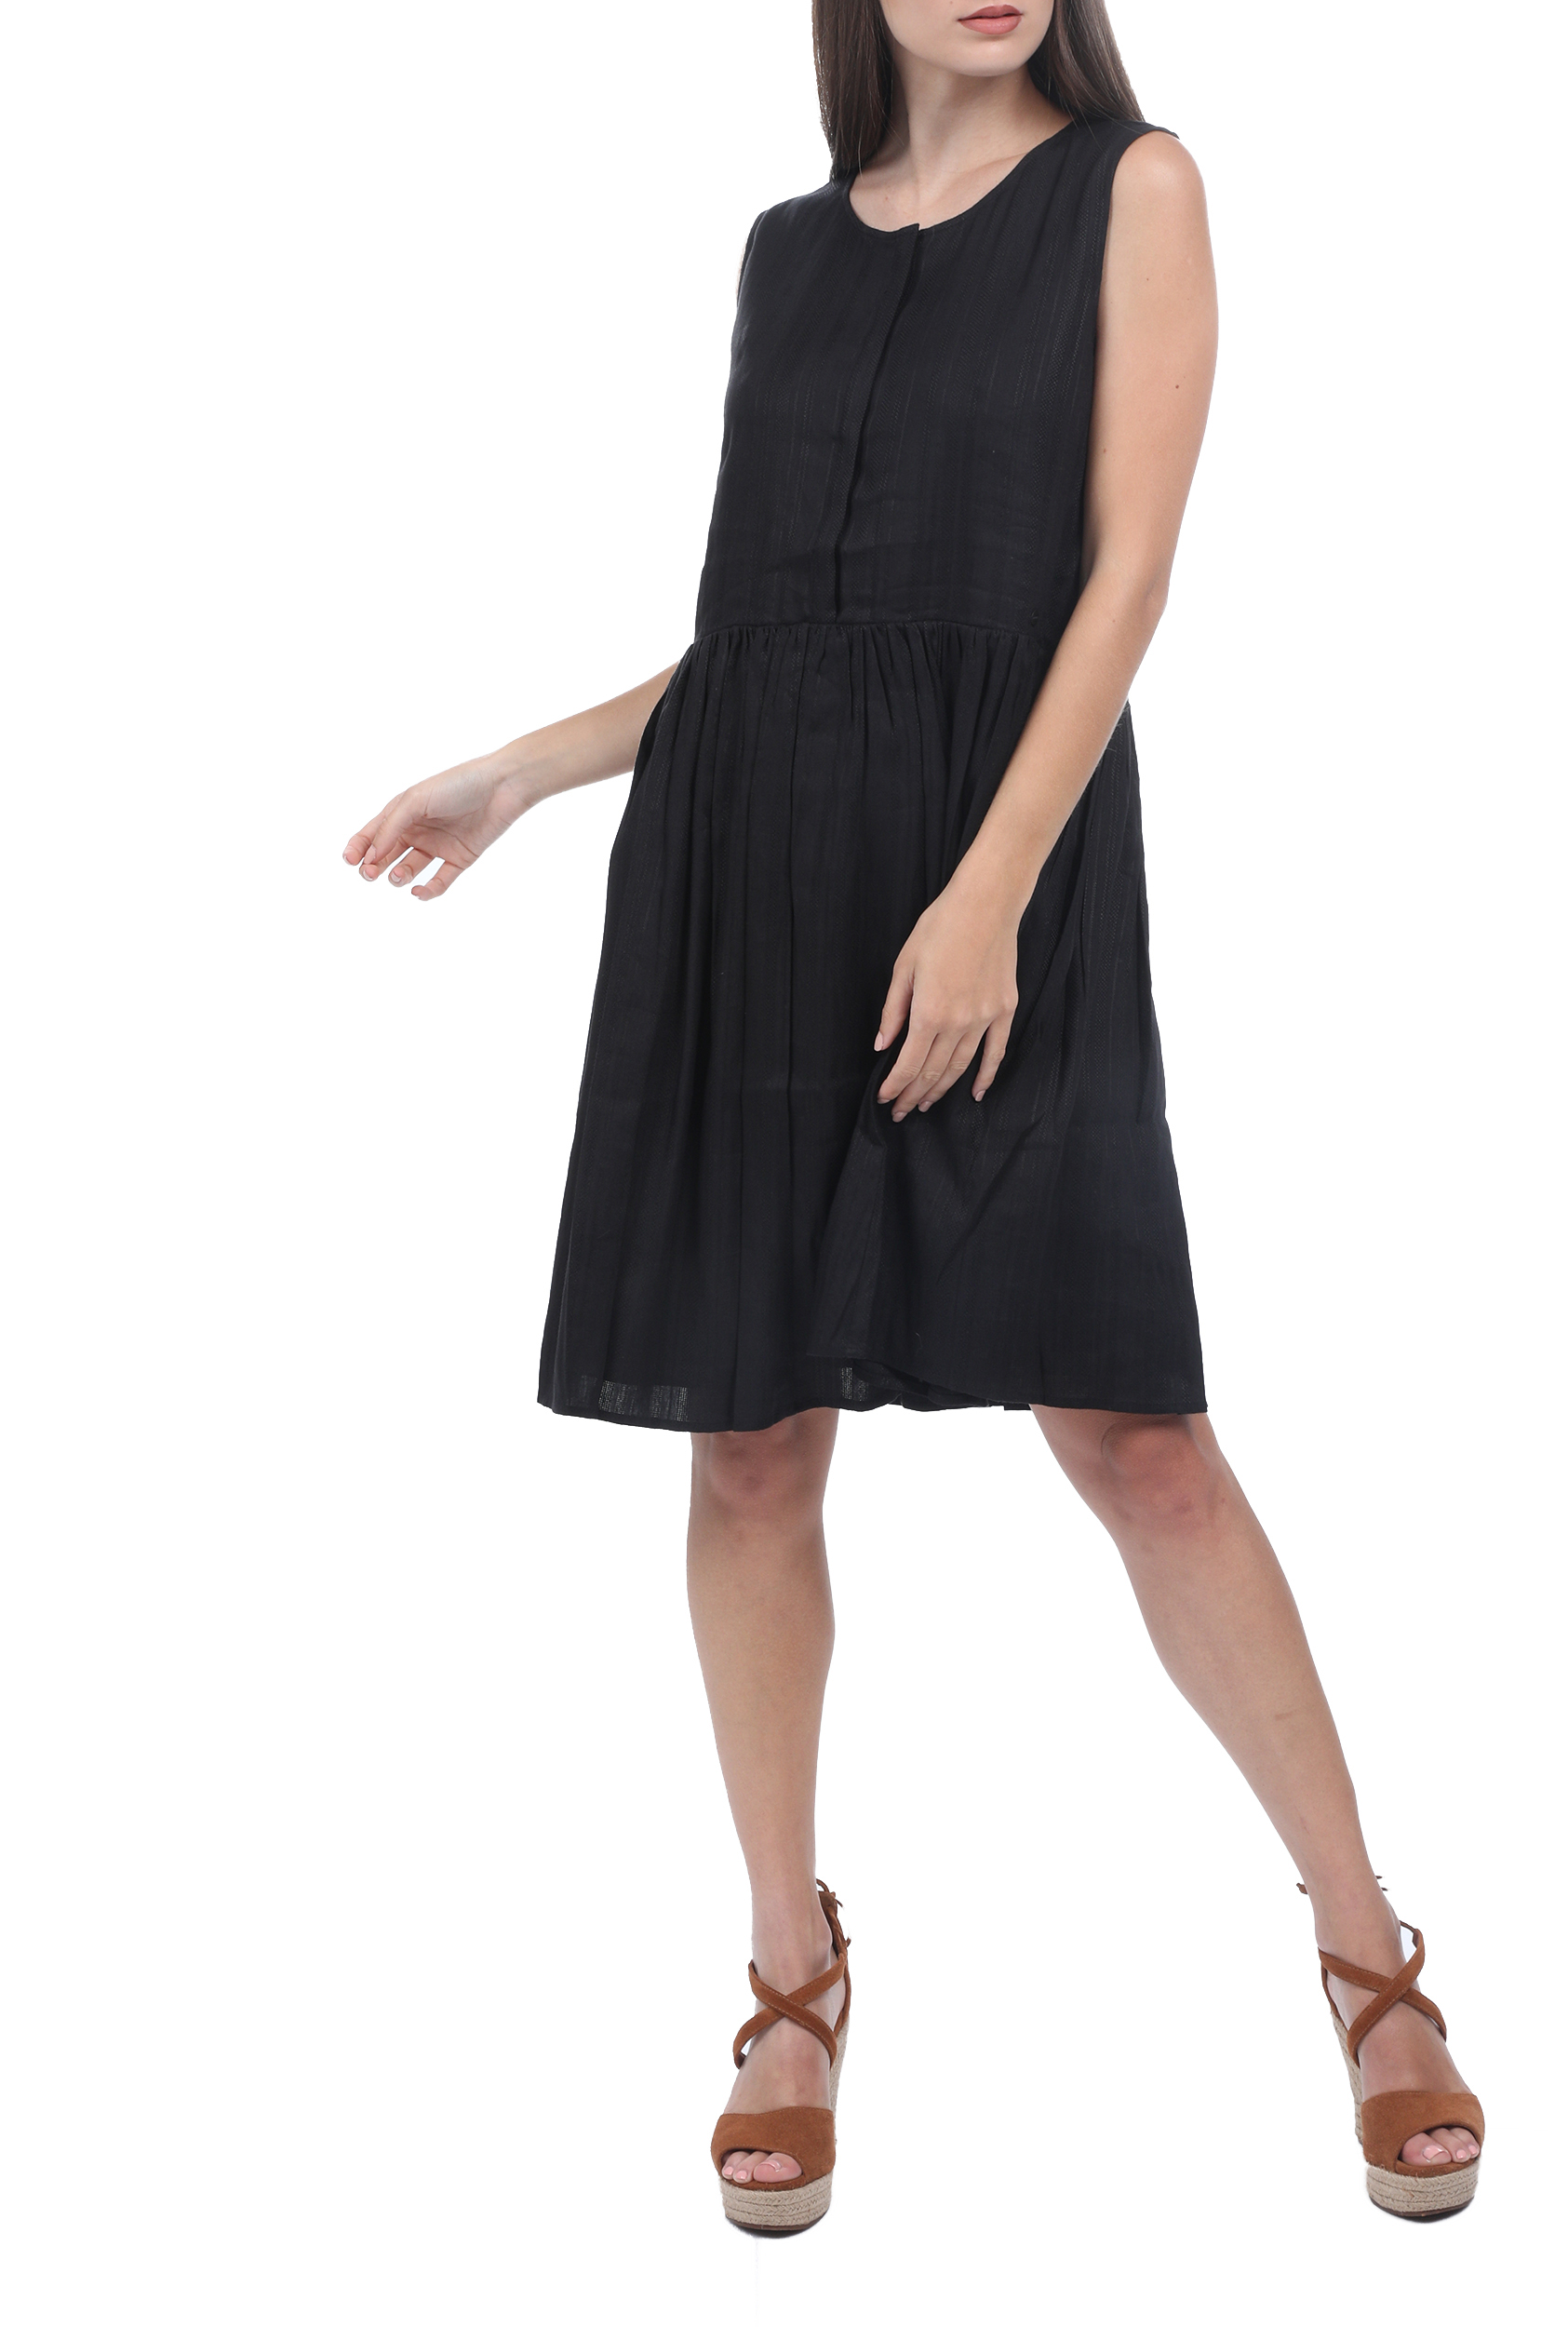 Γυναικεία/Ρούχα/Φούστες/Μέχρι το γόνατο SUPERDRY - Γυναικείο φόρεμα SUPERDRY TEXTURED DAY DRESS μαύρο